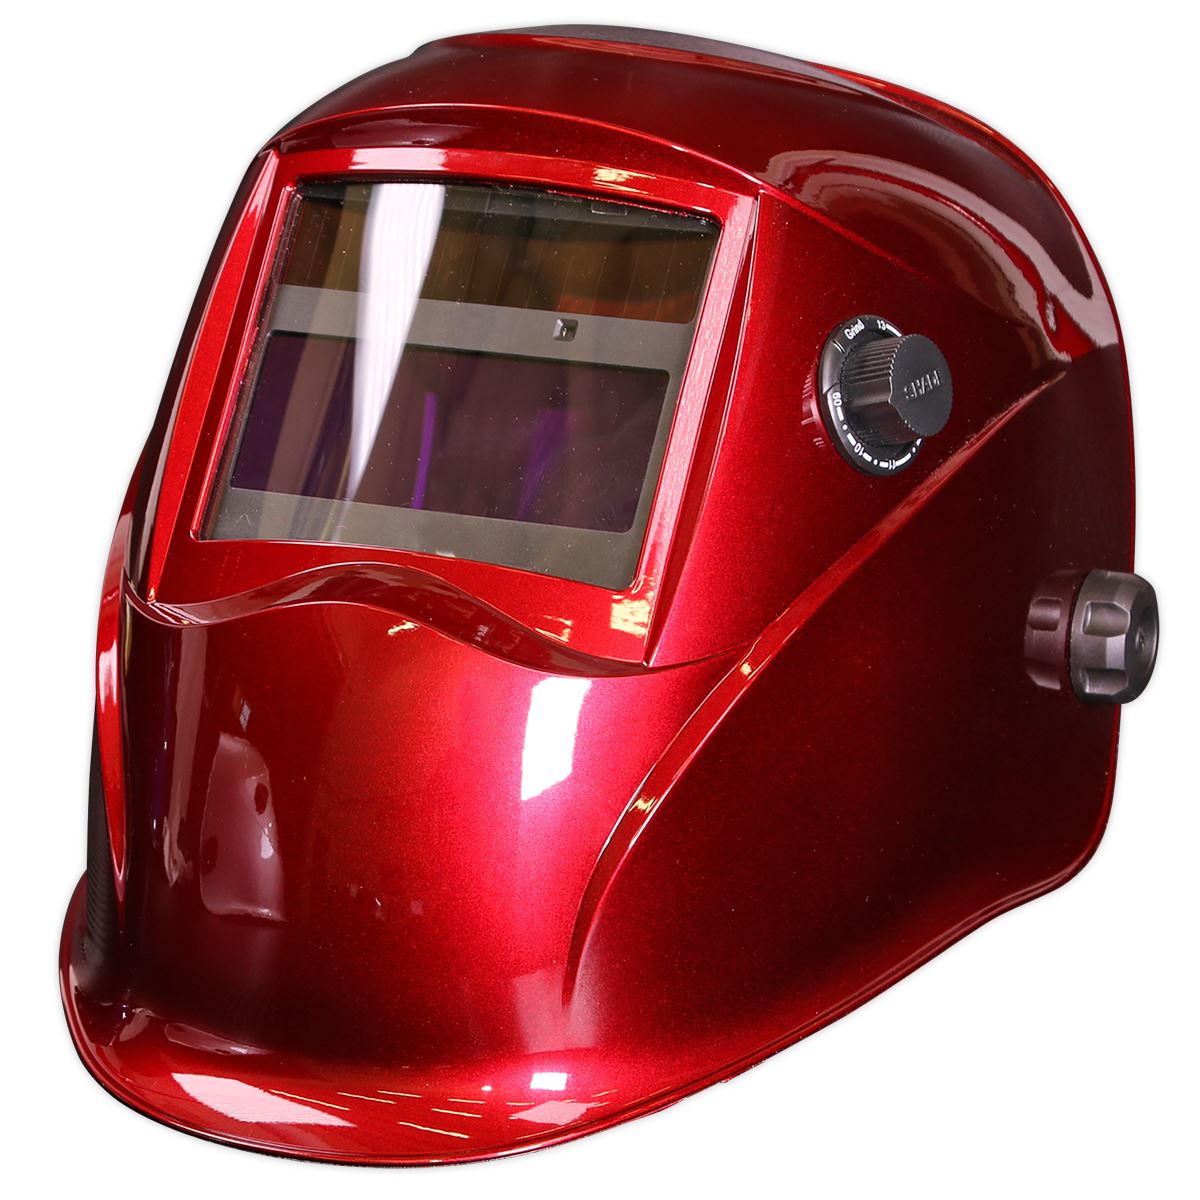 Sealey Welding Helmet Auto Darkening - Shade 9-13 - Red